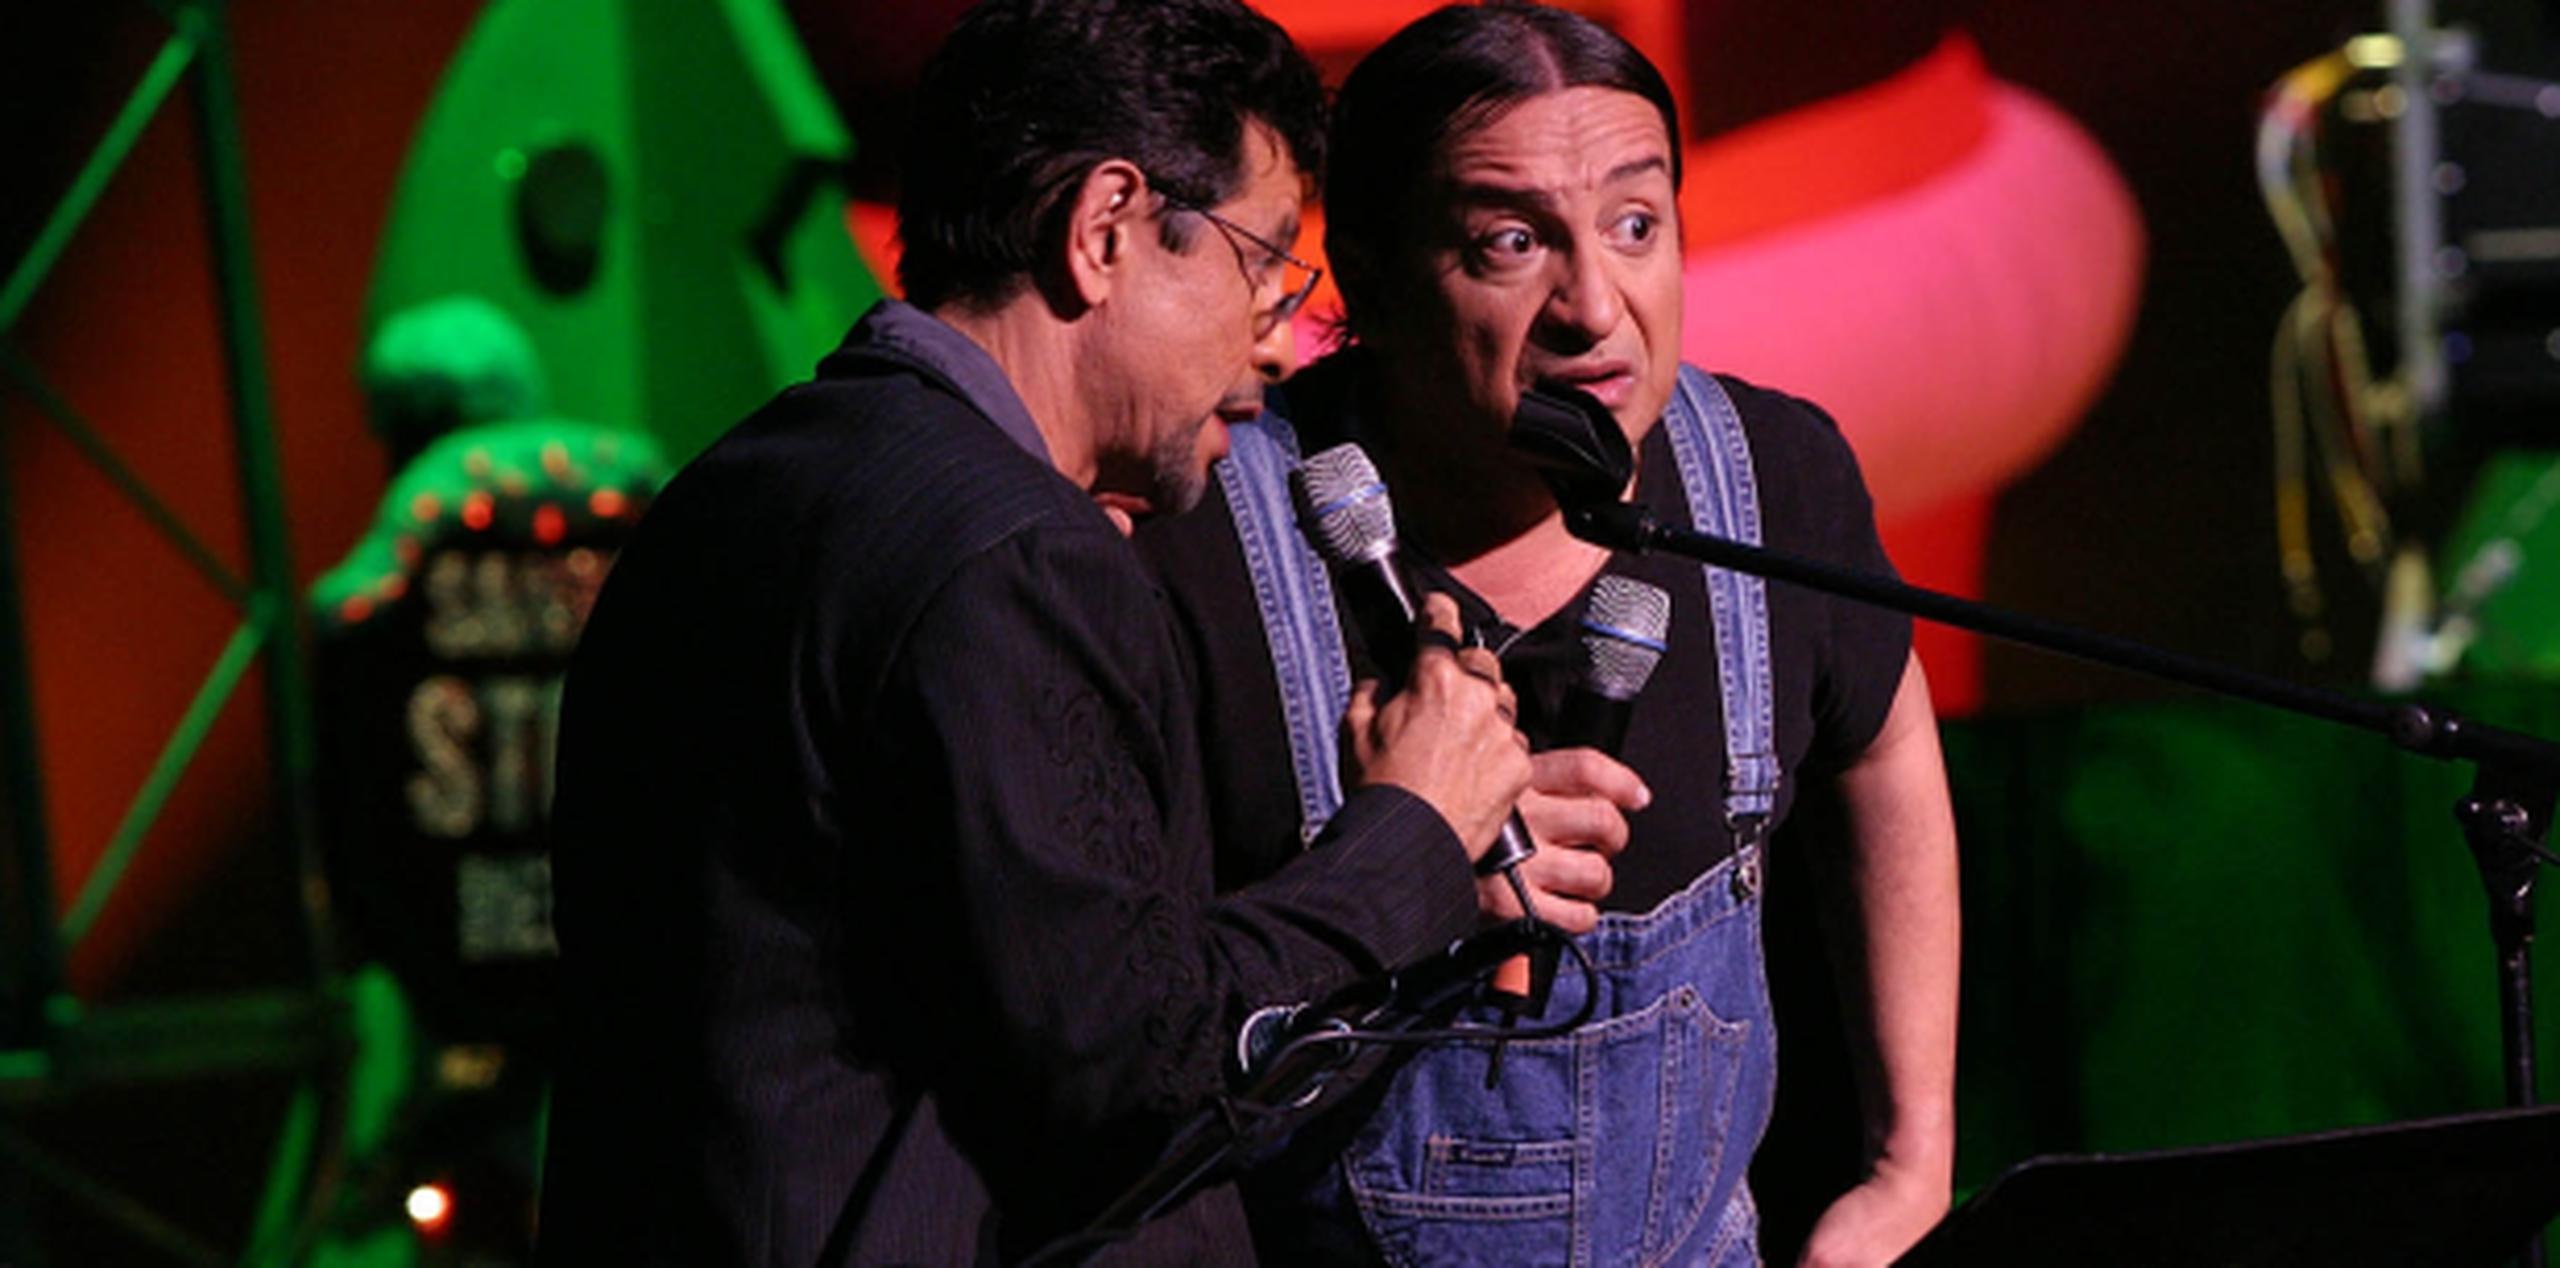 El comediante ponceño falleció el 1 de febrero, según su relacionista Lidda García. (Archivo)